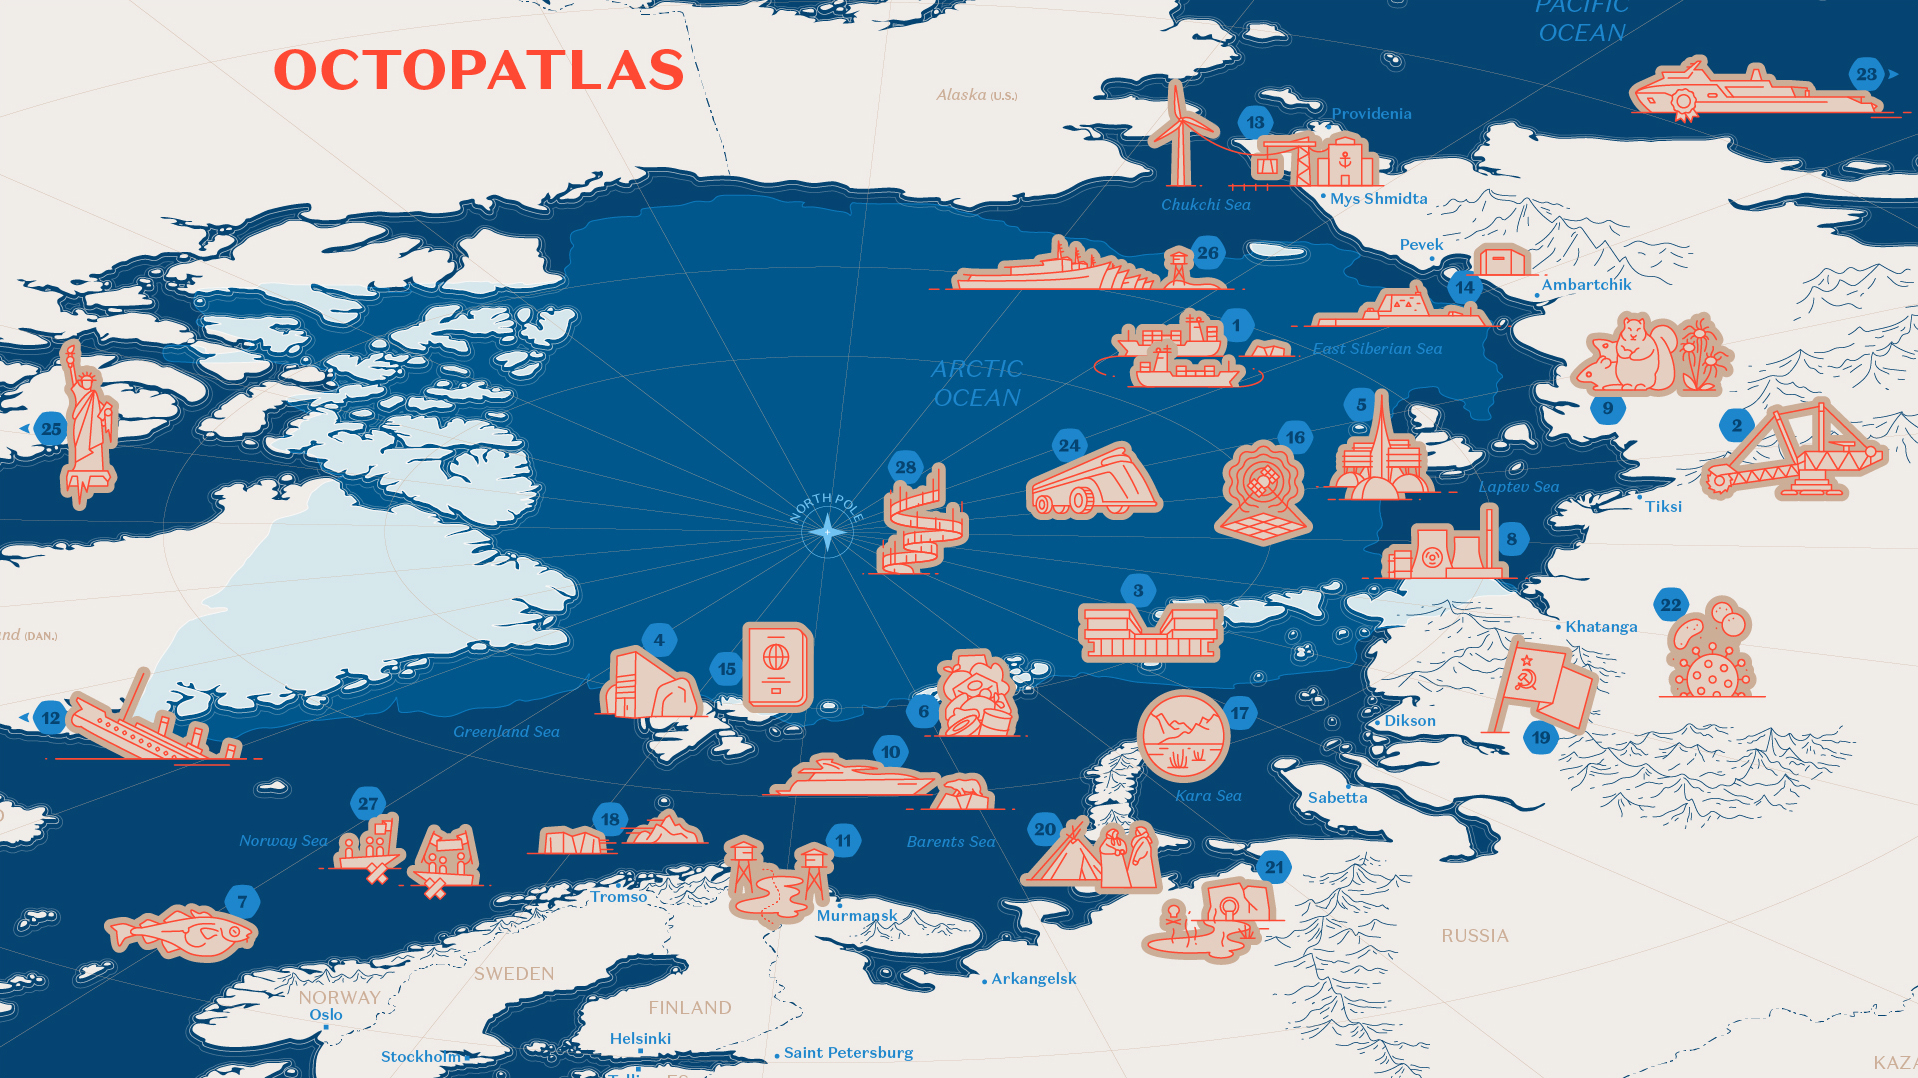 Première capture d'écran de l'outil "Octopatlas". Il s'agit d'une carte couvrant l'océan Arctique, le nord de l'Europe et la Sibérie. Des numéros sont parsemés sur lette carte, chacun accompagné d'une petite illustration. Chacun donne accès à quelque chose.